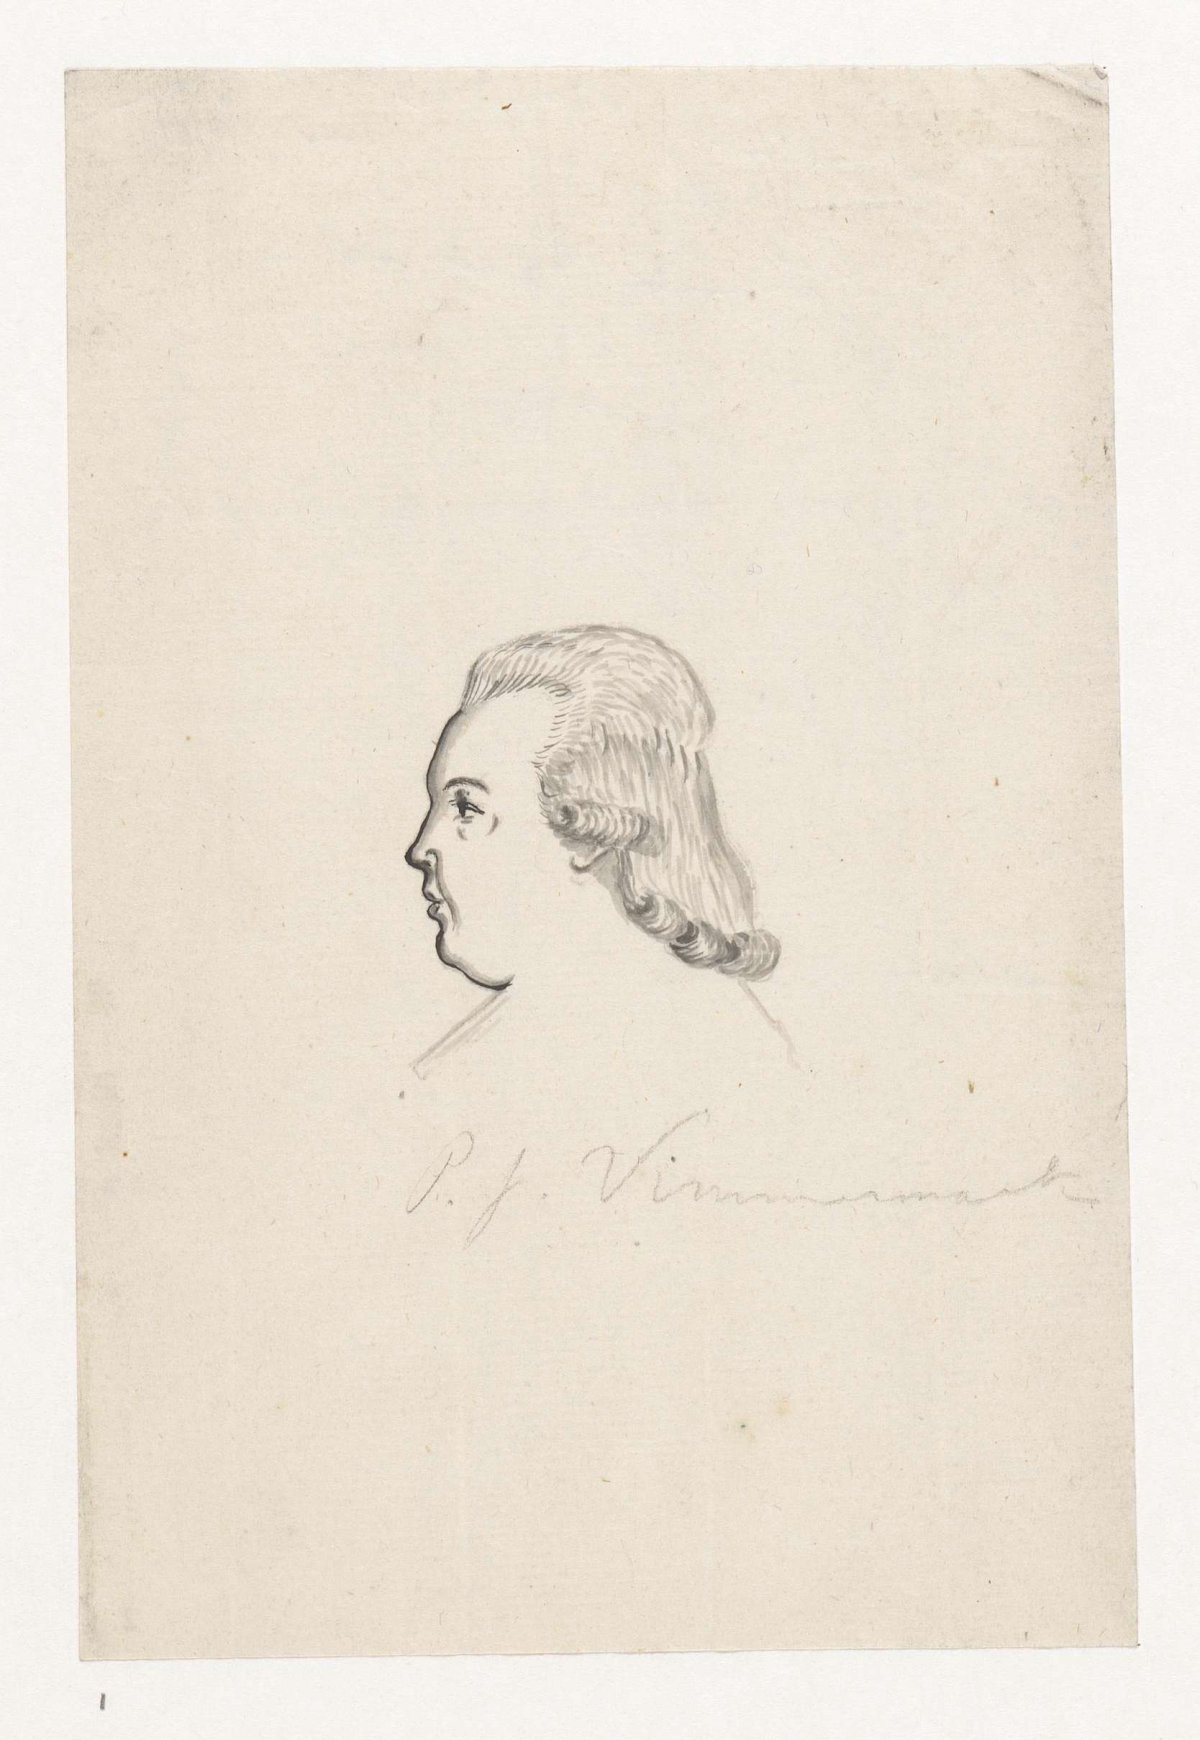 Portrait of Per Johan Wimermark, Jan Brandes, 1796